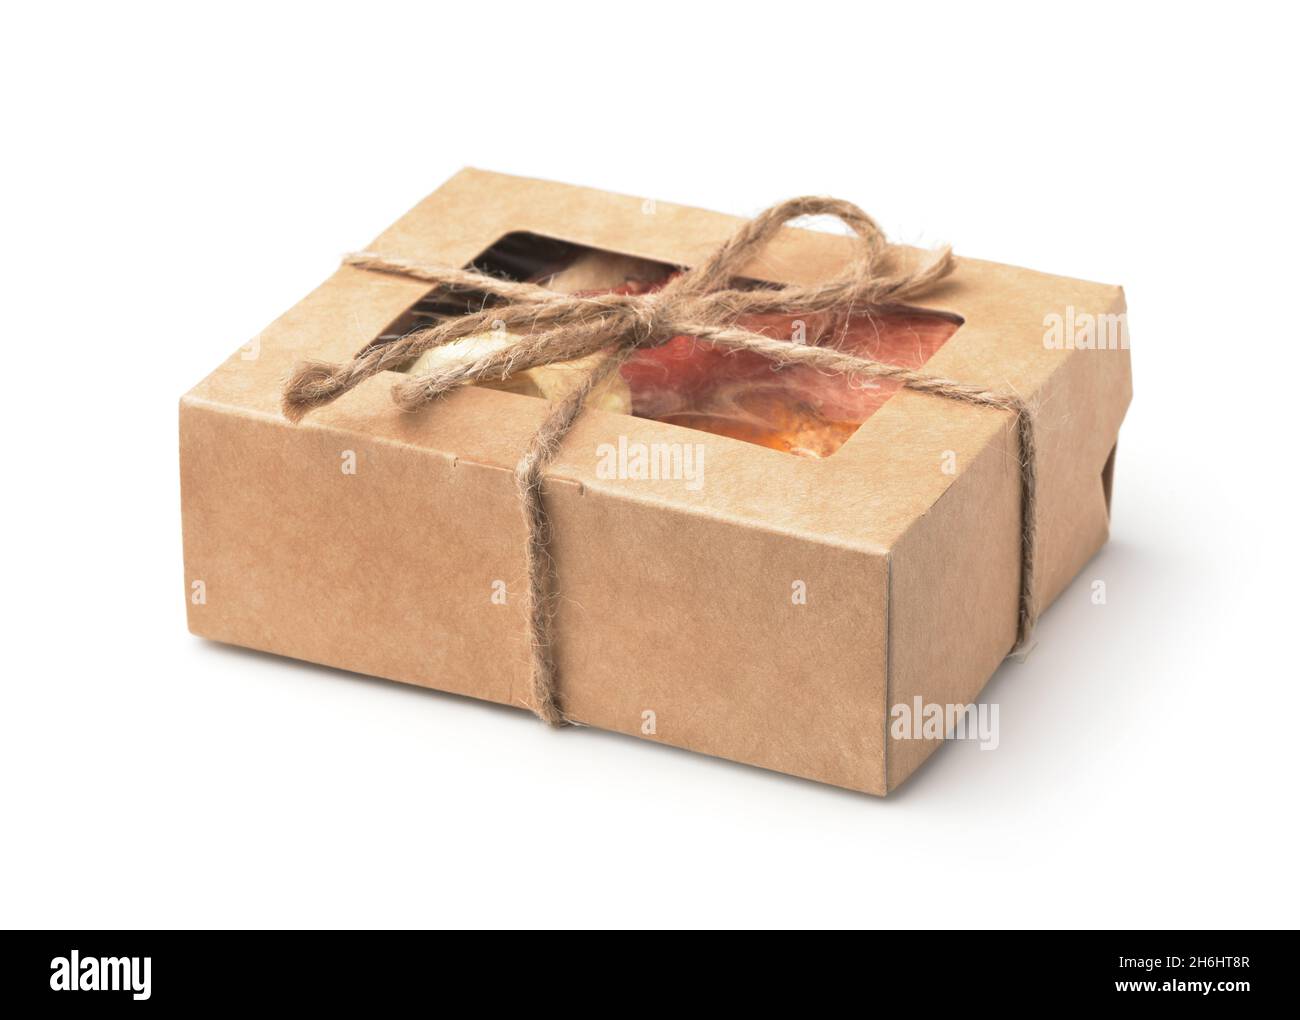 Boîte-cadeau en papier kraft brun pleine de bonbons aux fruits biologiques isolés sur du blanc Banque D'Images